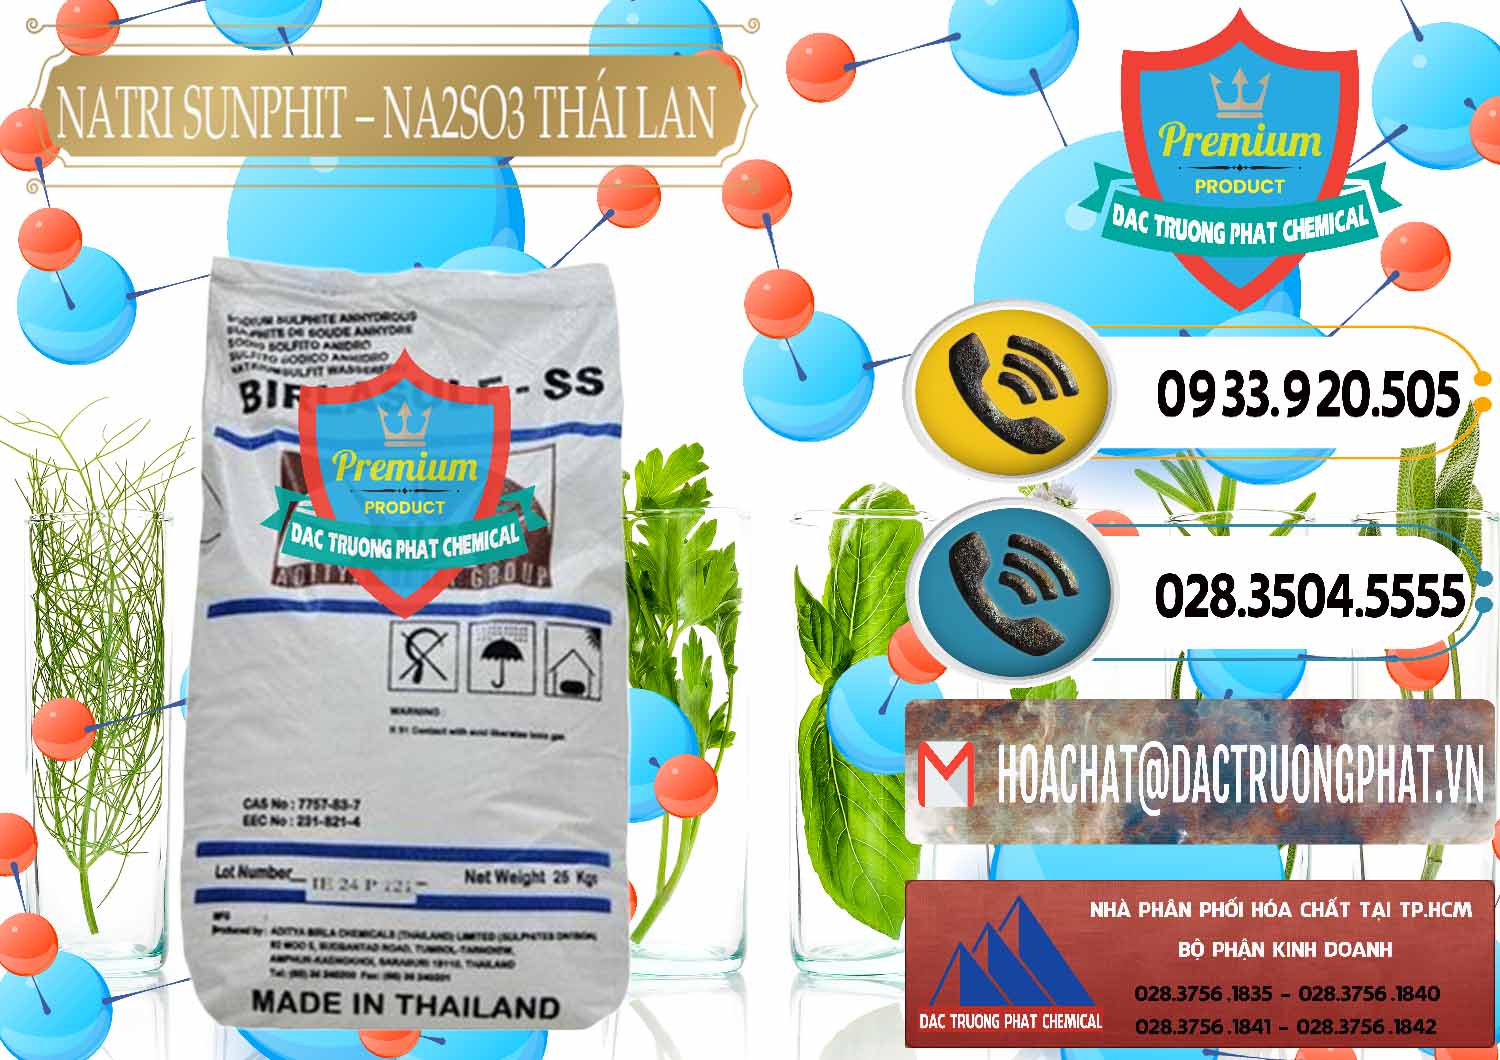 Nơi chuyên kinh doanh & bán Natri Sunphit - NA2SO3 Thái Lan - 0105 - Công ty chuyên nhập khẩu - cung cấp hóa chất tại TP.HCM - hoachatdetnhuom.vn